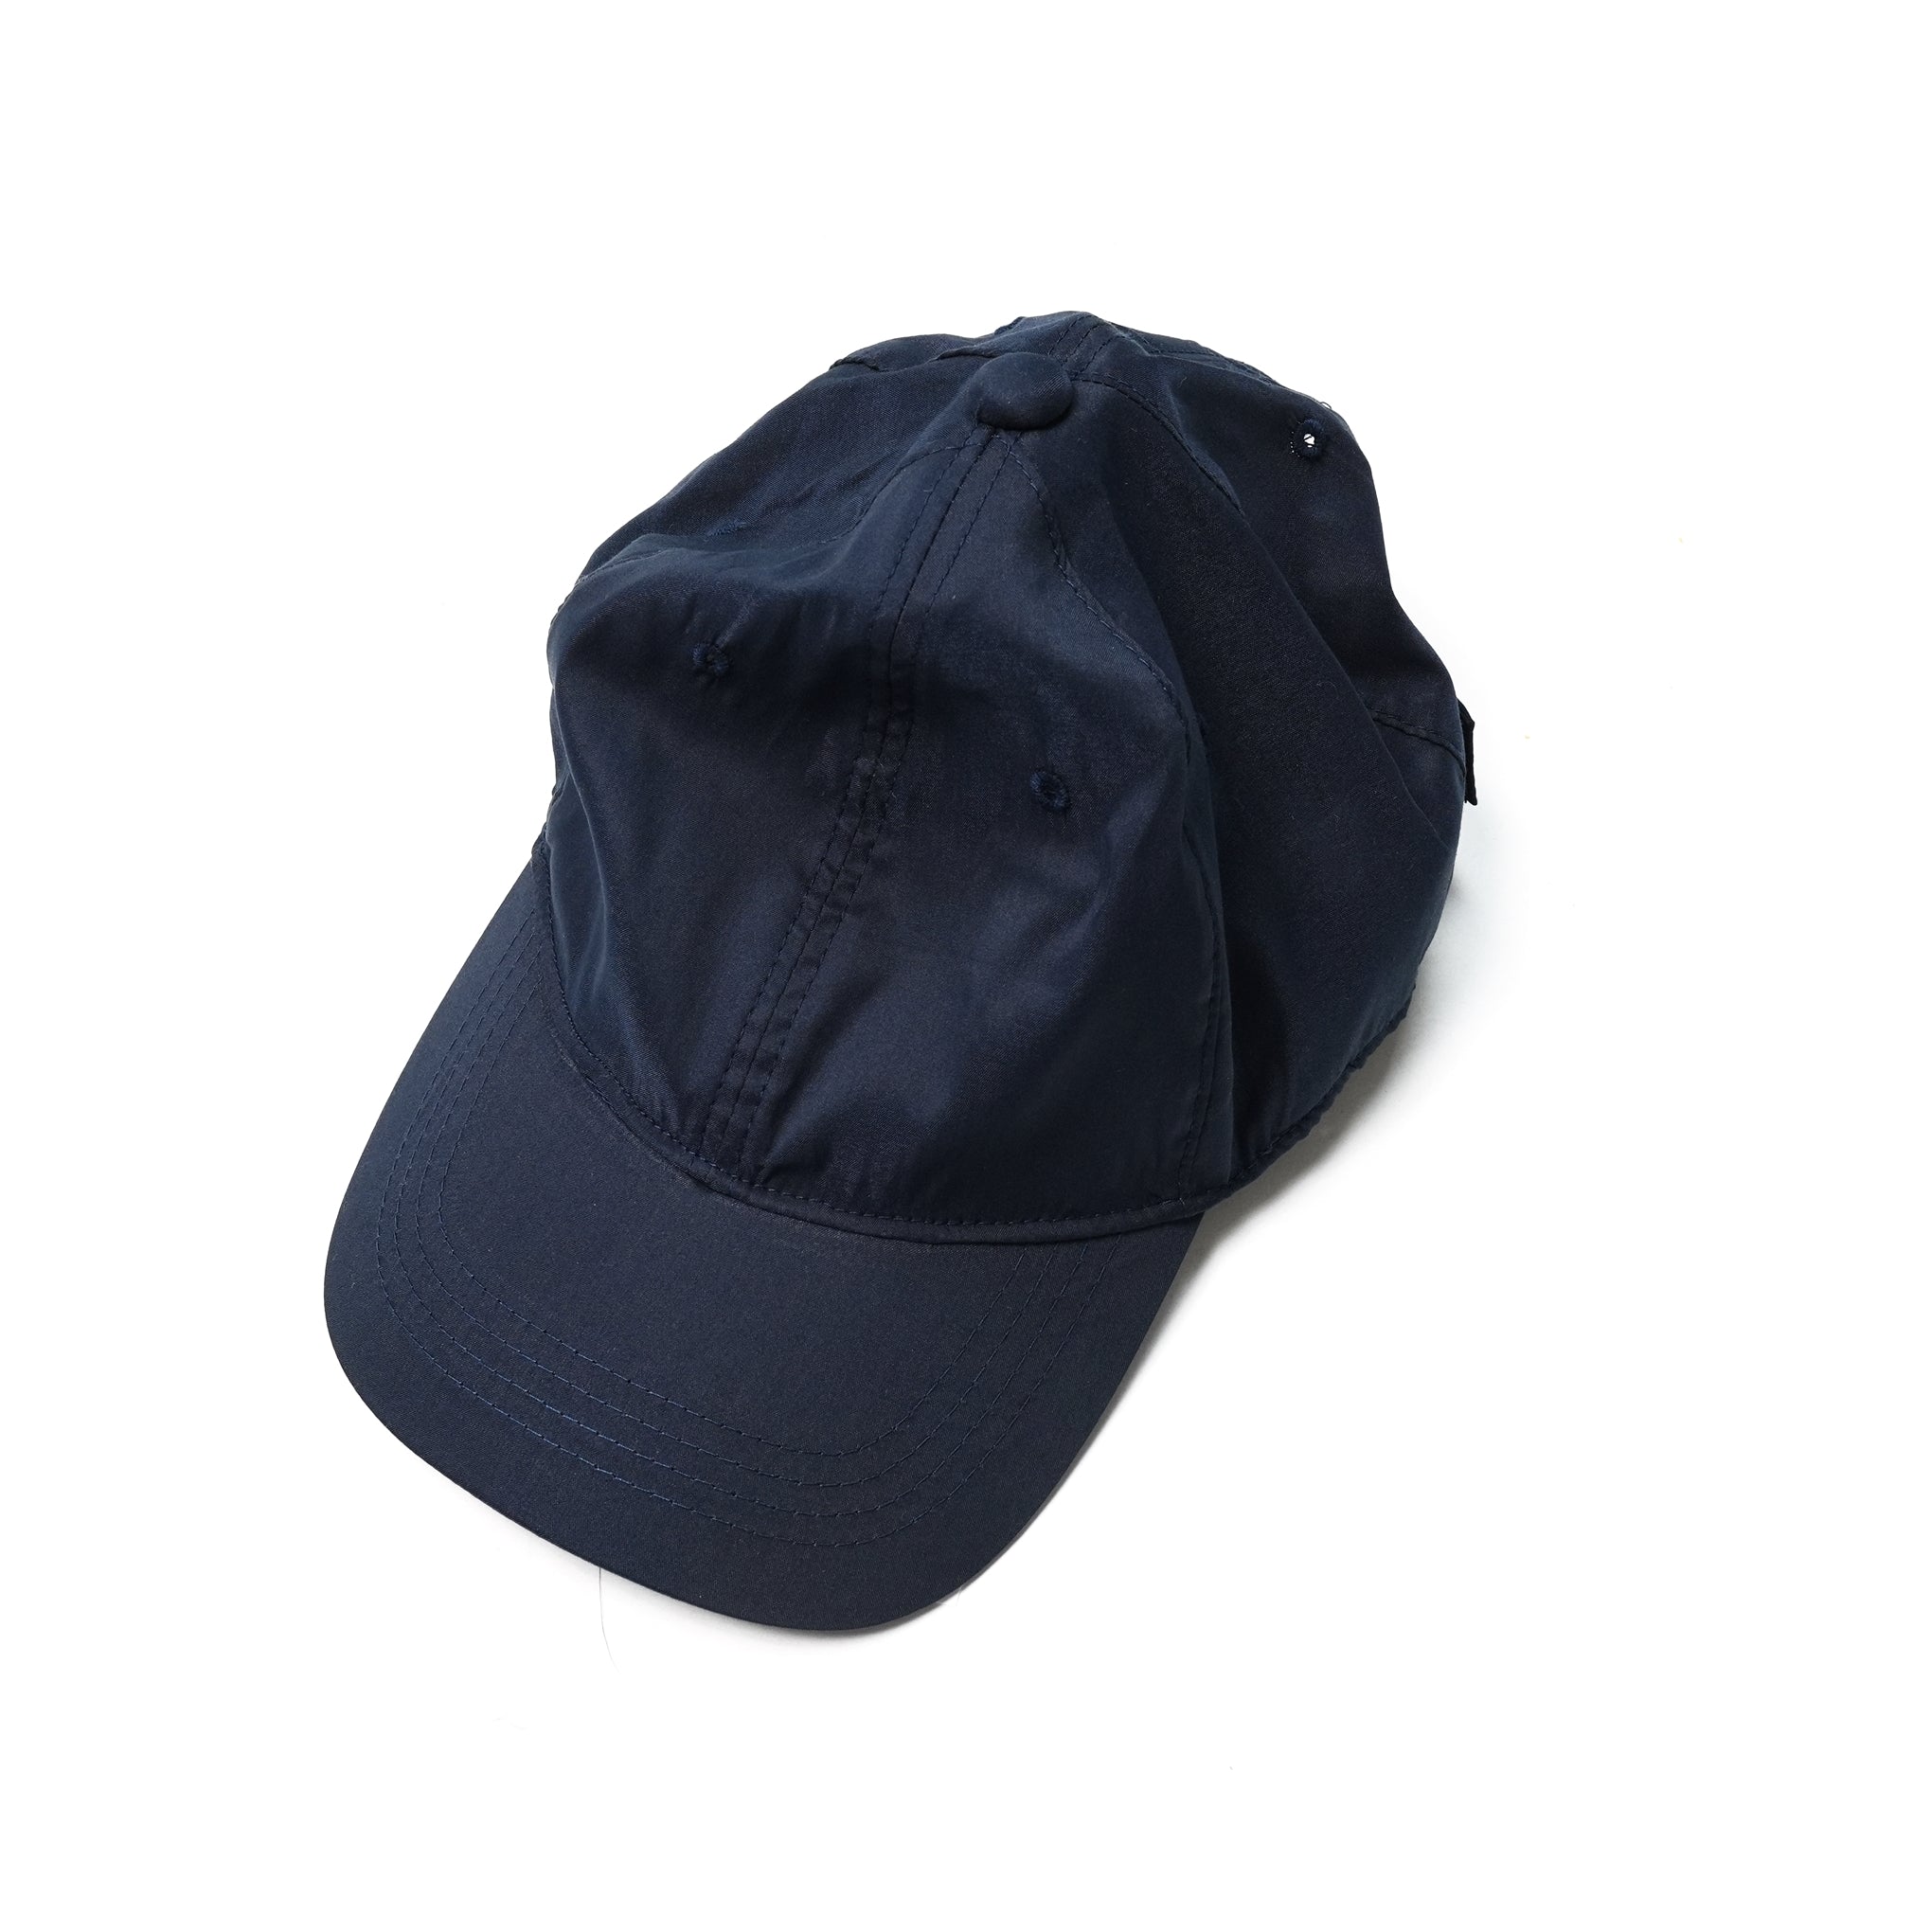 No:UN-019_SS23_a | Name:6 PANEL CAP (COOL MAX) | Color:Dark Navy(C/#6)